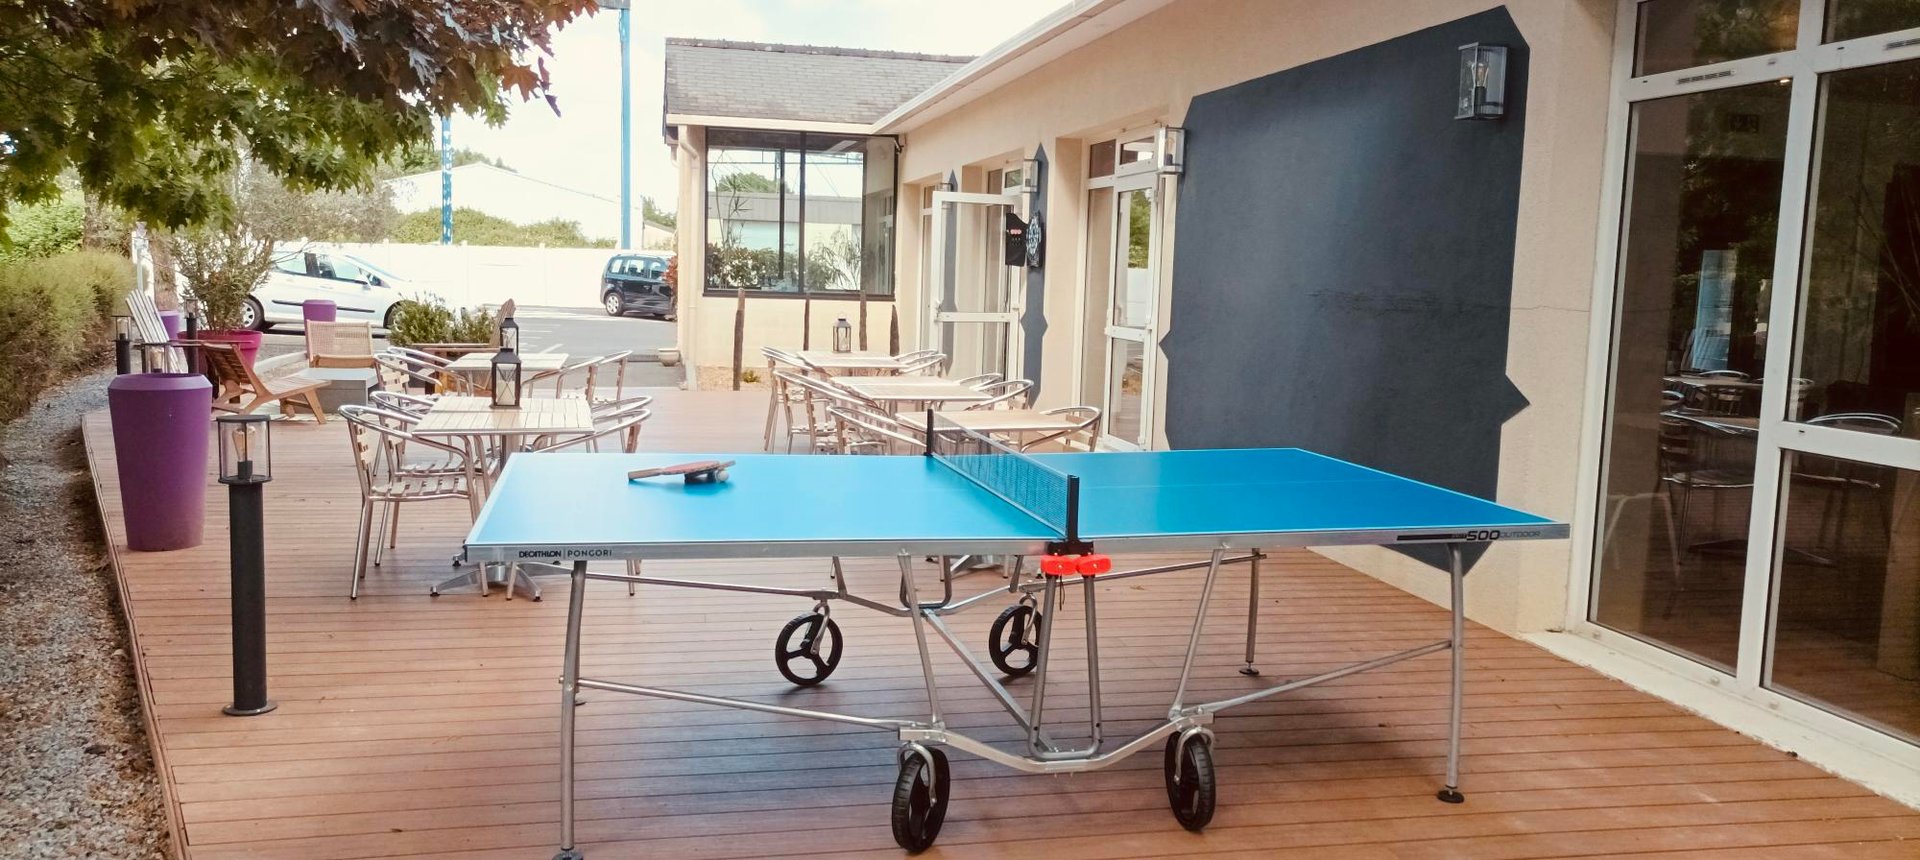 Hôtel Le Village 49*** | Table de ping pong | Les ponts de cé